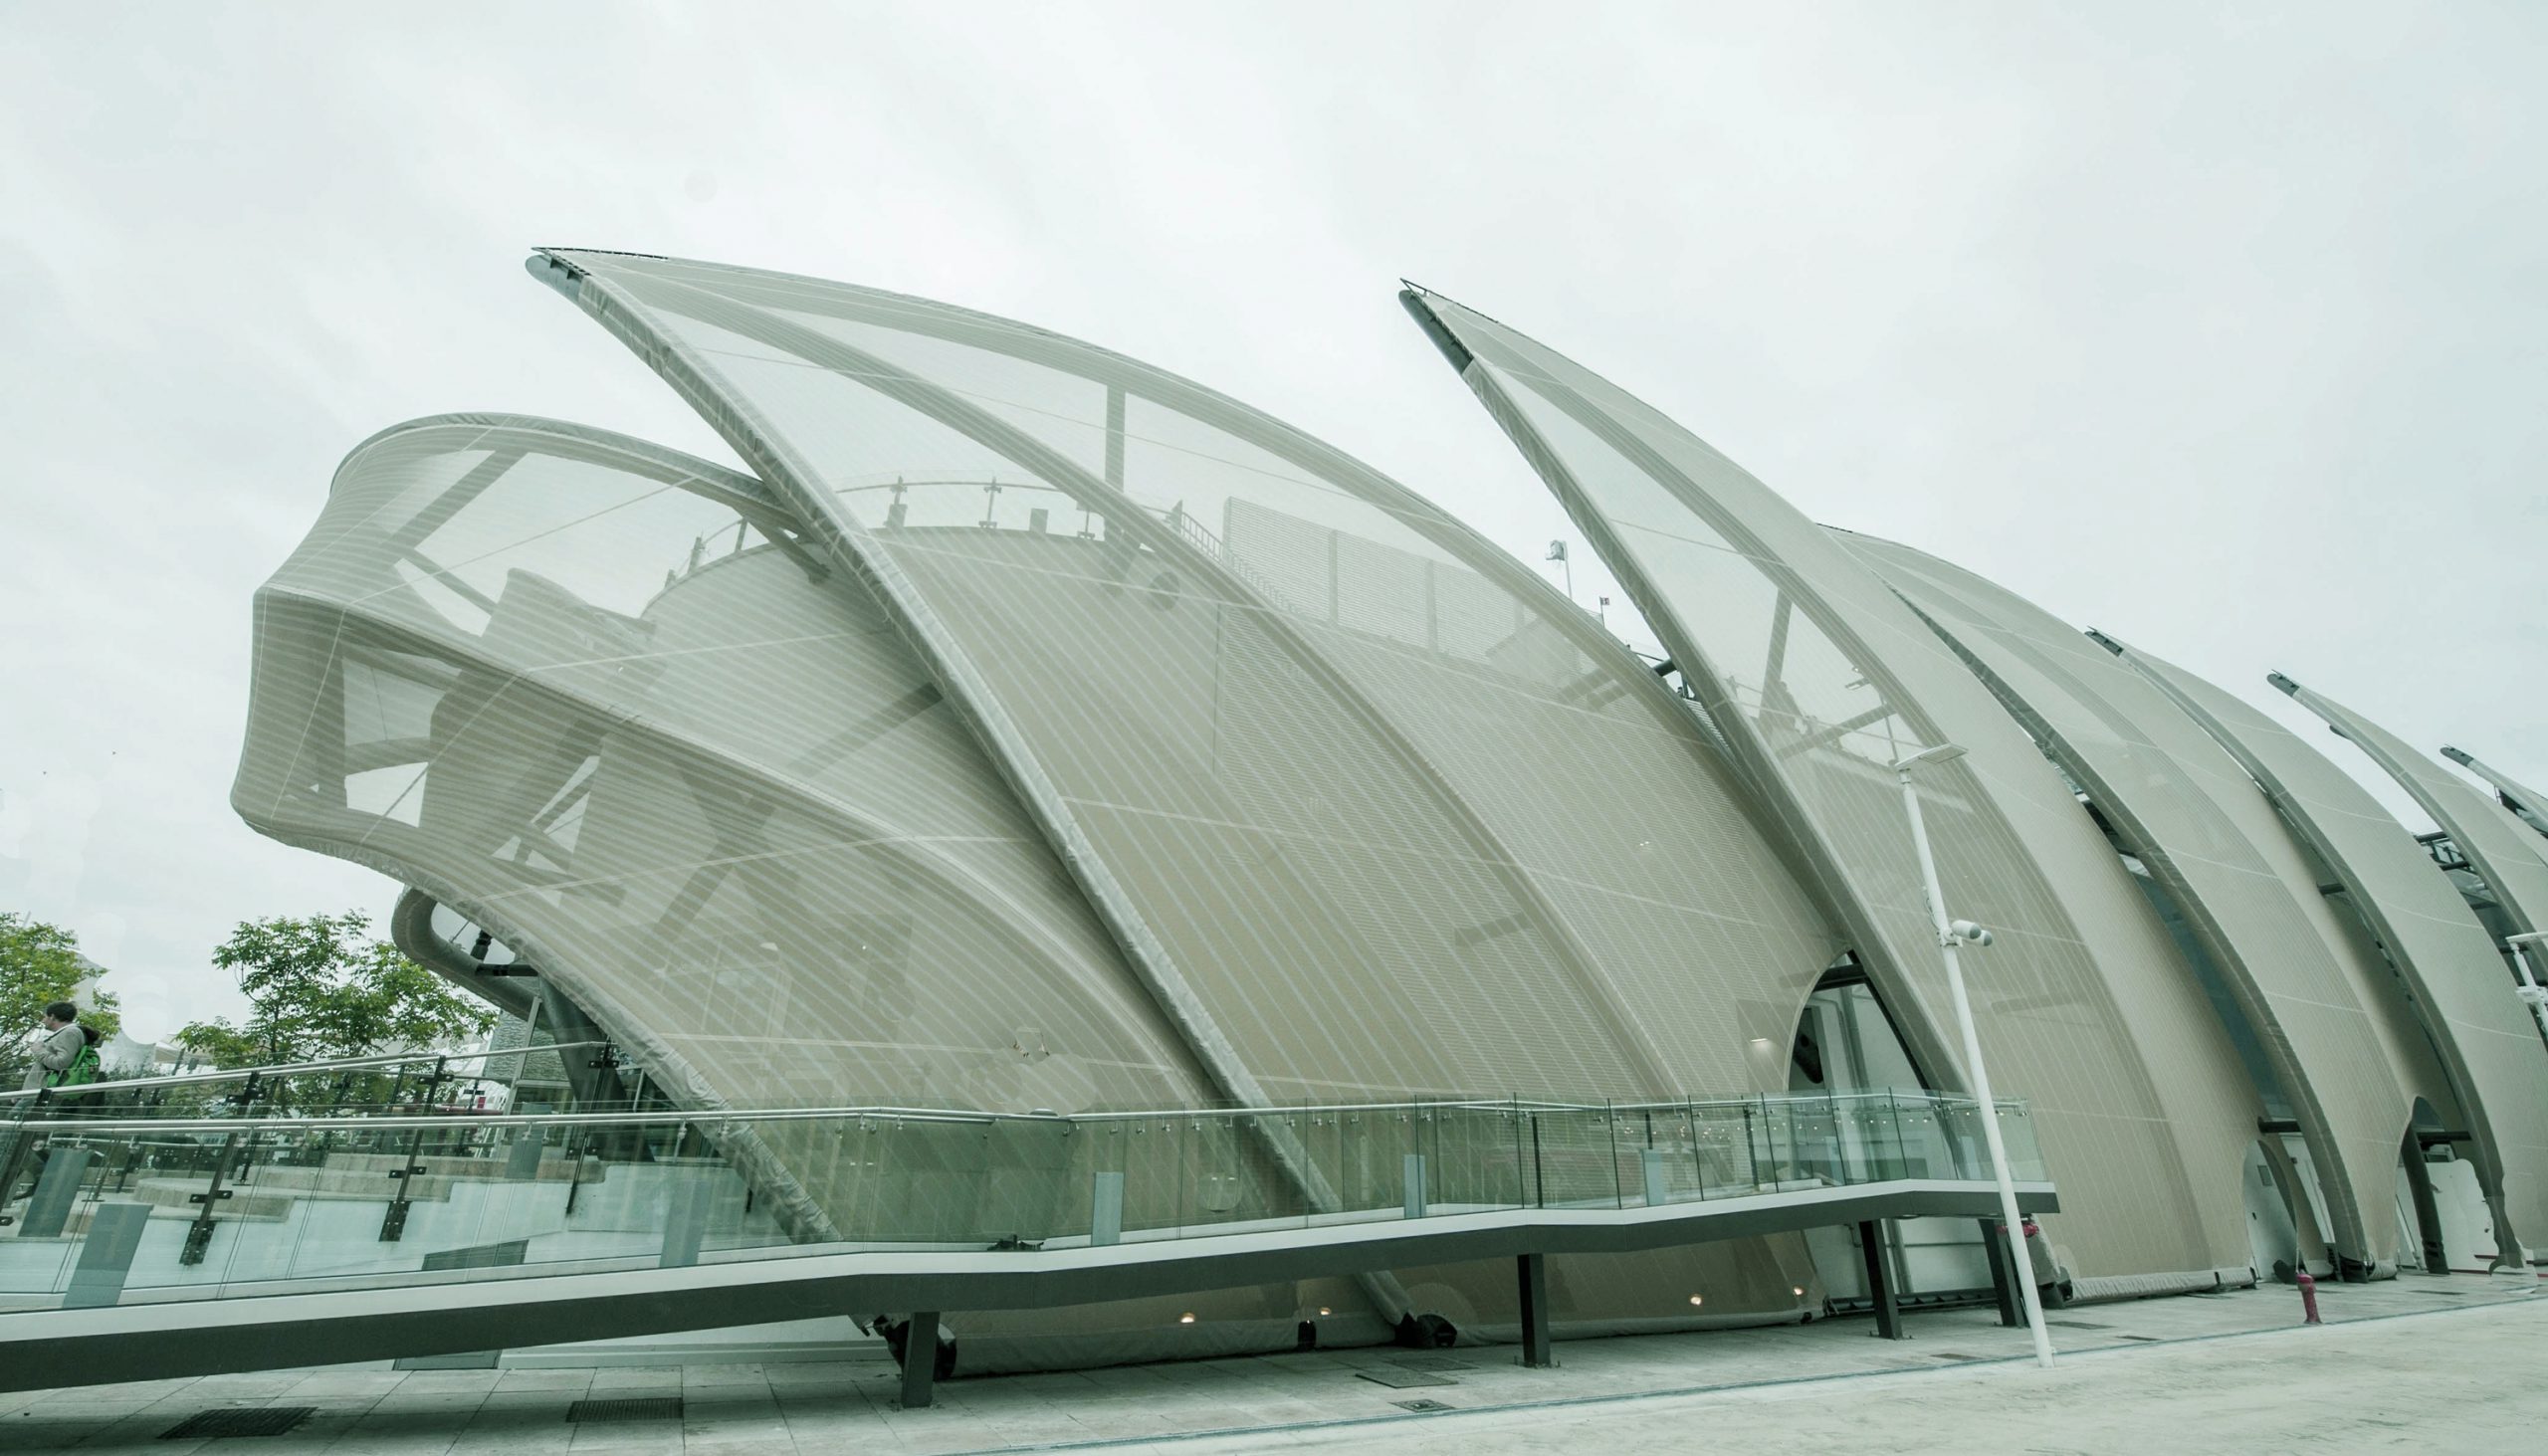 Architettura sostenibile, l’esempio di Expo 2015